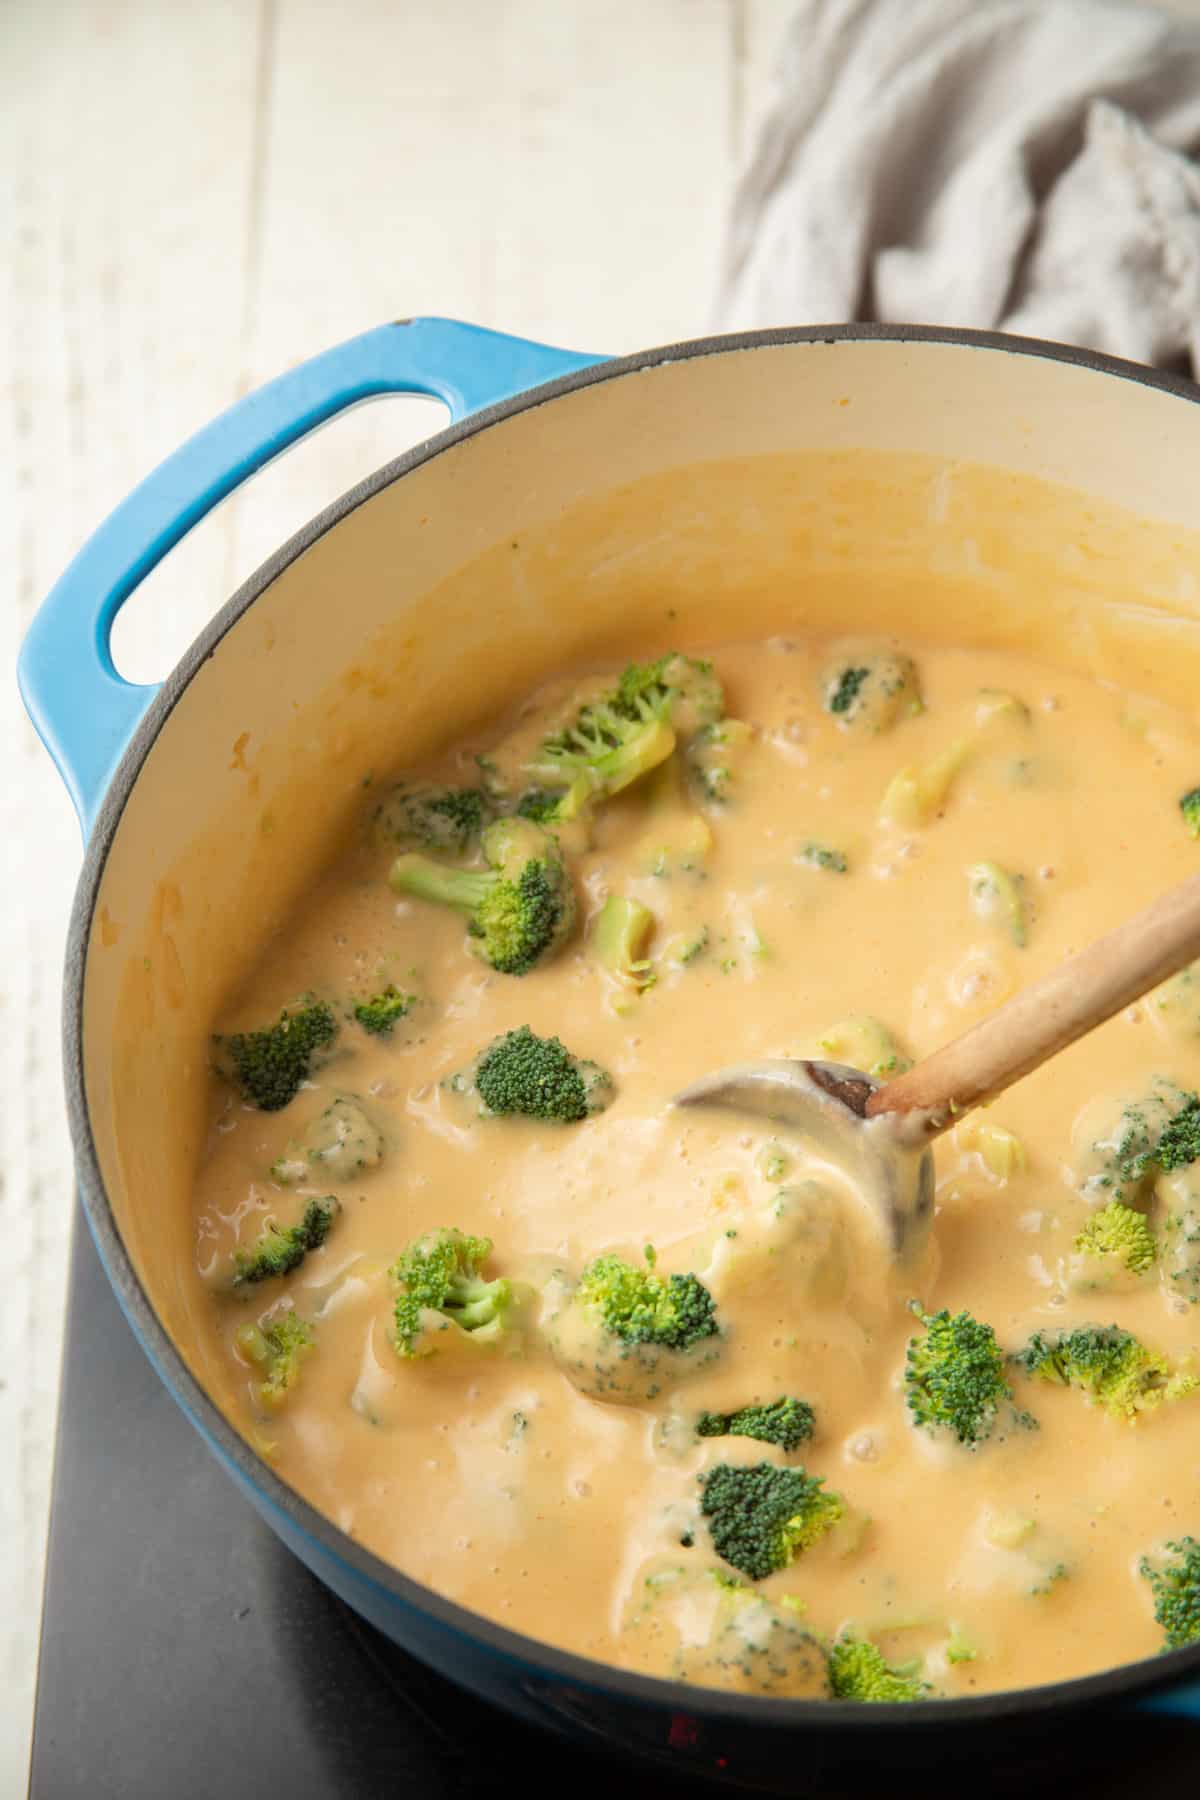 Sopa vegana de brócoli y queso cheddar hirviendo a fuego lento en una olla.